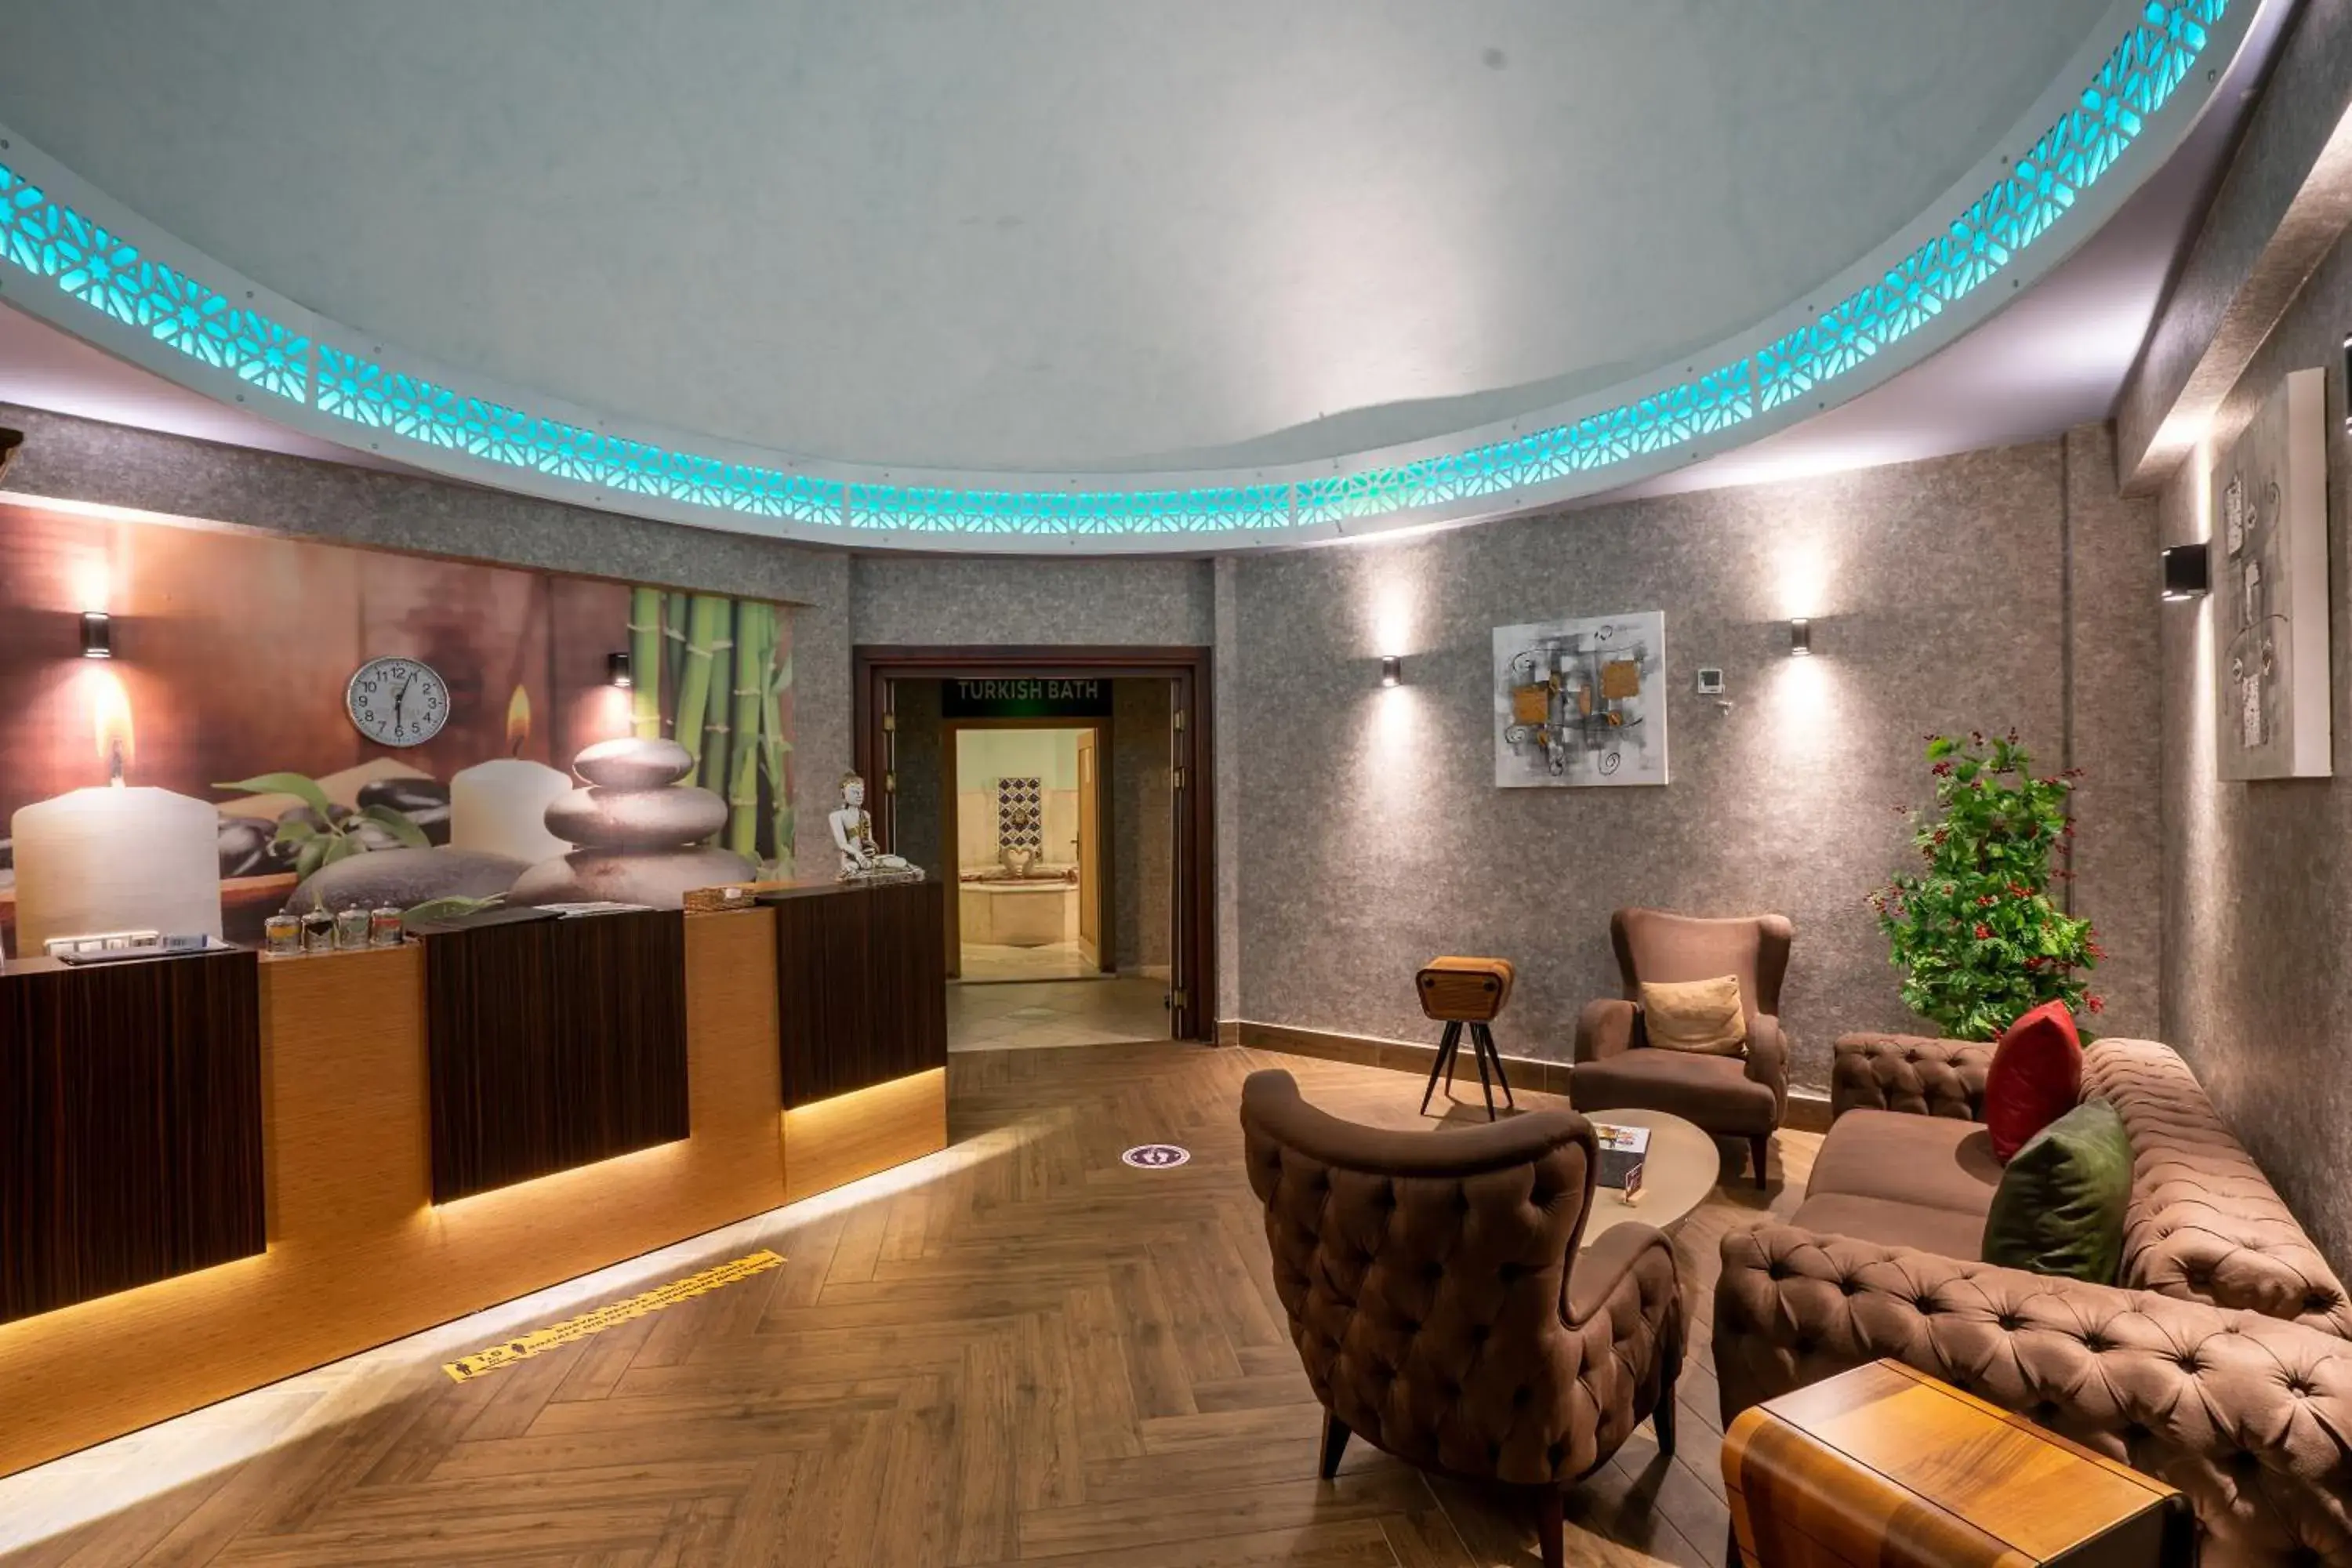 Sauna, Lobby/Reception in Club Hotel Felicia Village